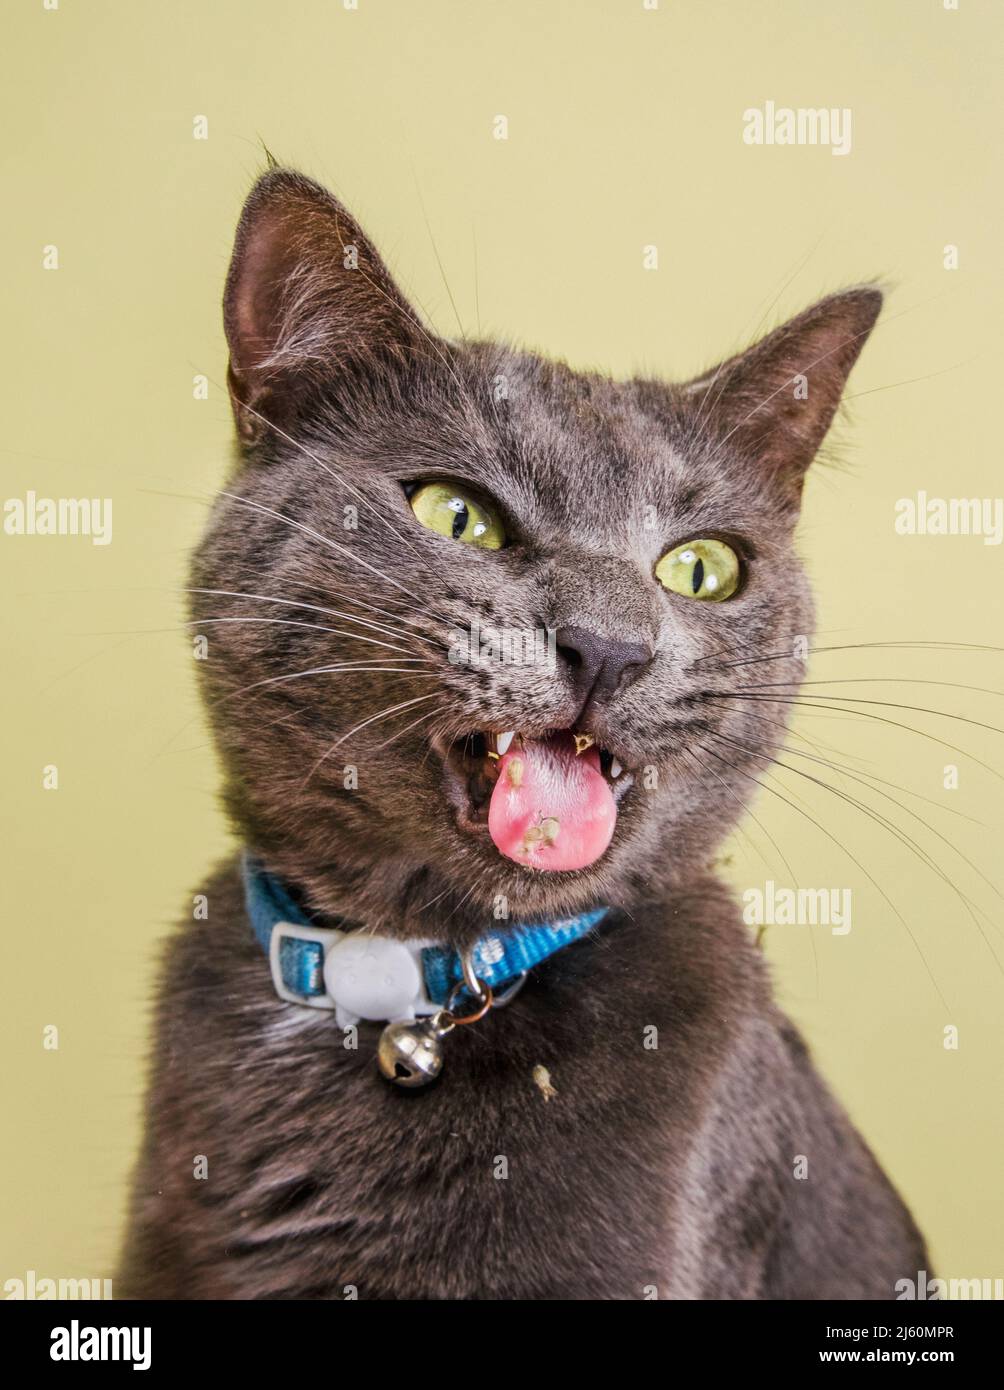 Estudio expresivo retrato de gato con boca abierta y catennip en su lengua. Foto de stock